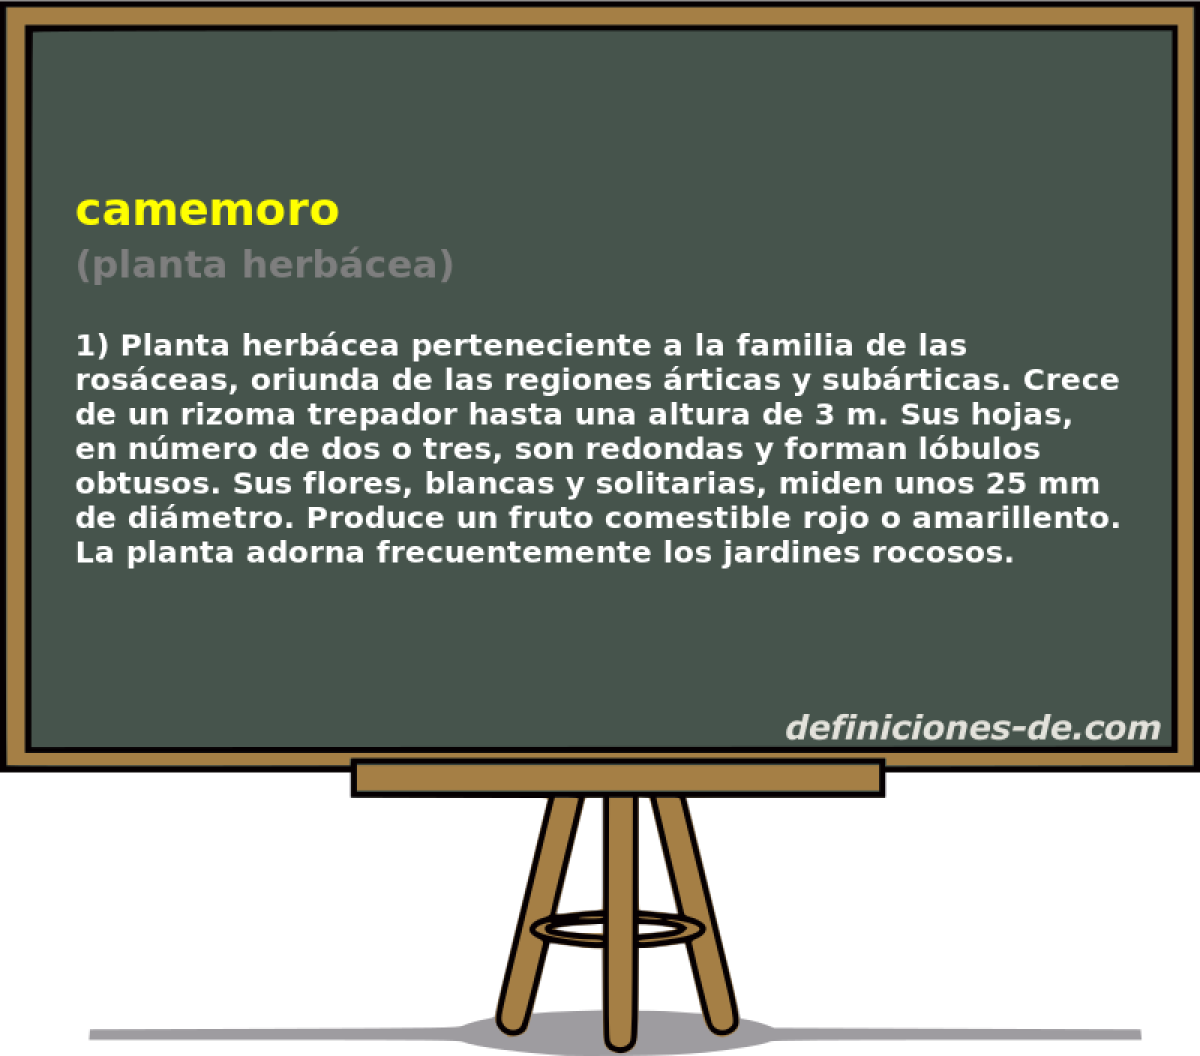 camemoro (planta herbcea)